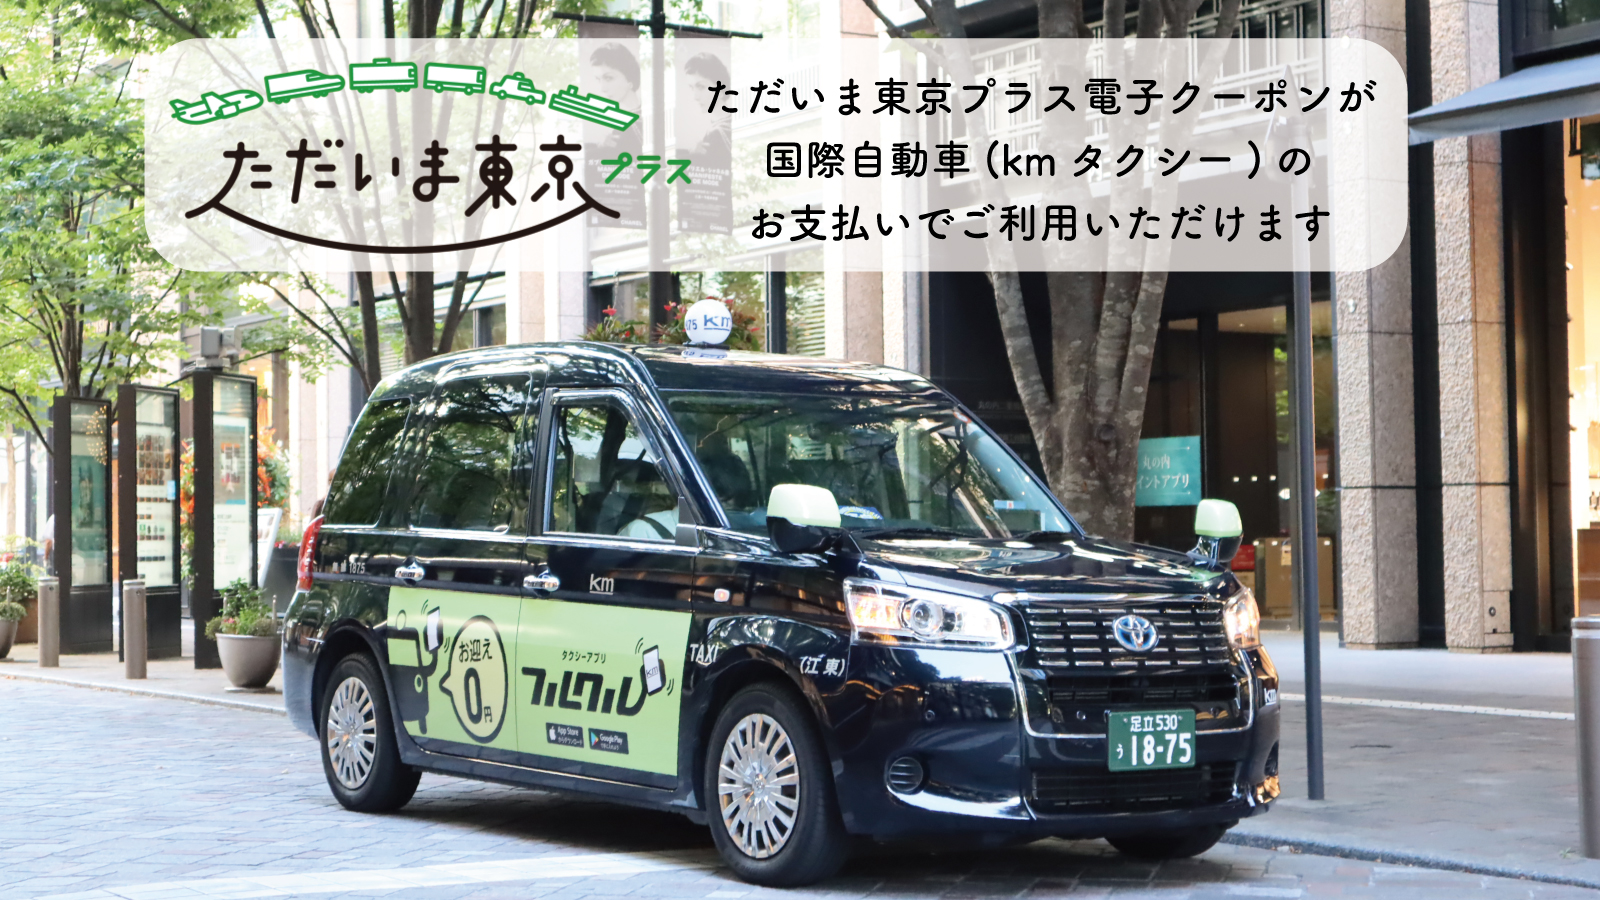 東京観光をタクシーで楽しむためのポータルサイト Tokyodrive Part 3